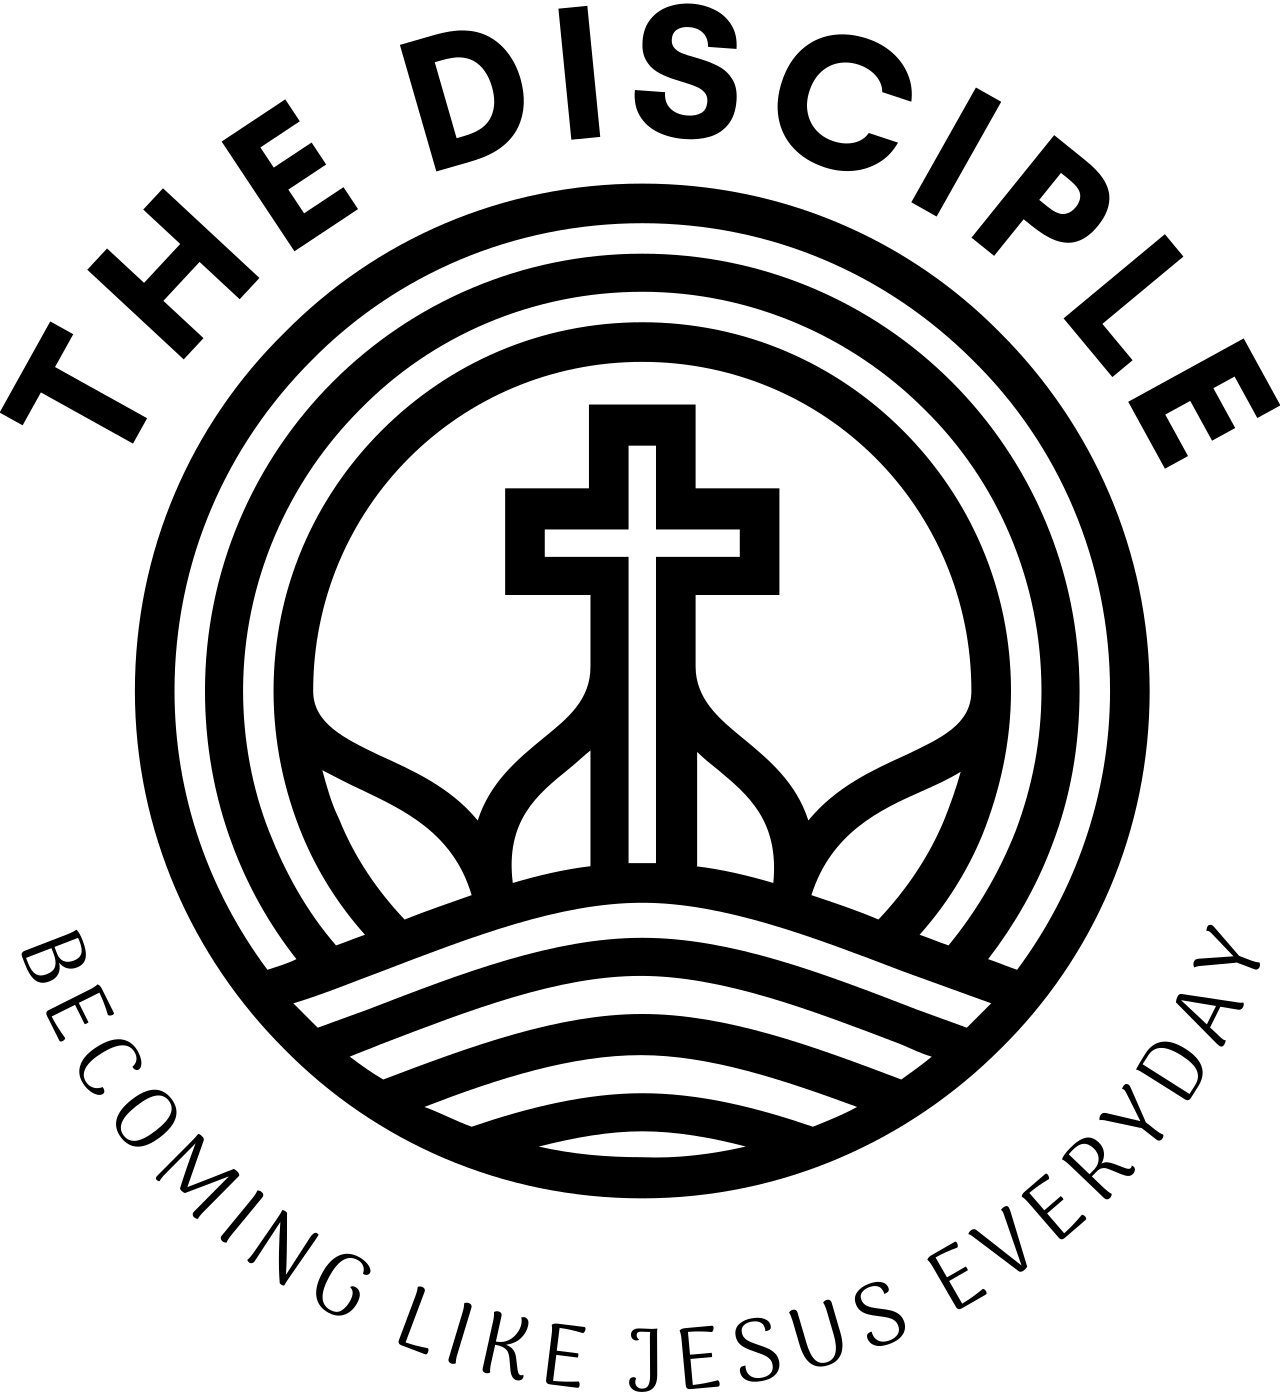 THE DISCIPLE's logo